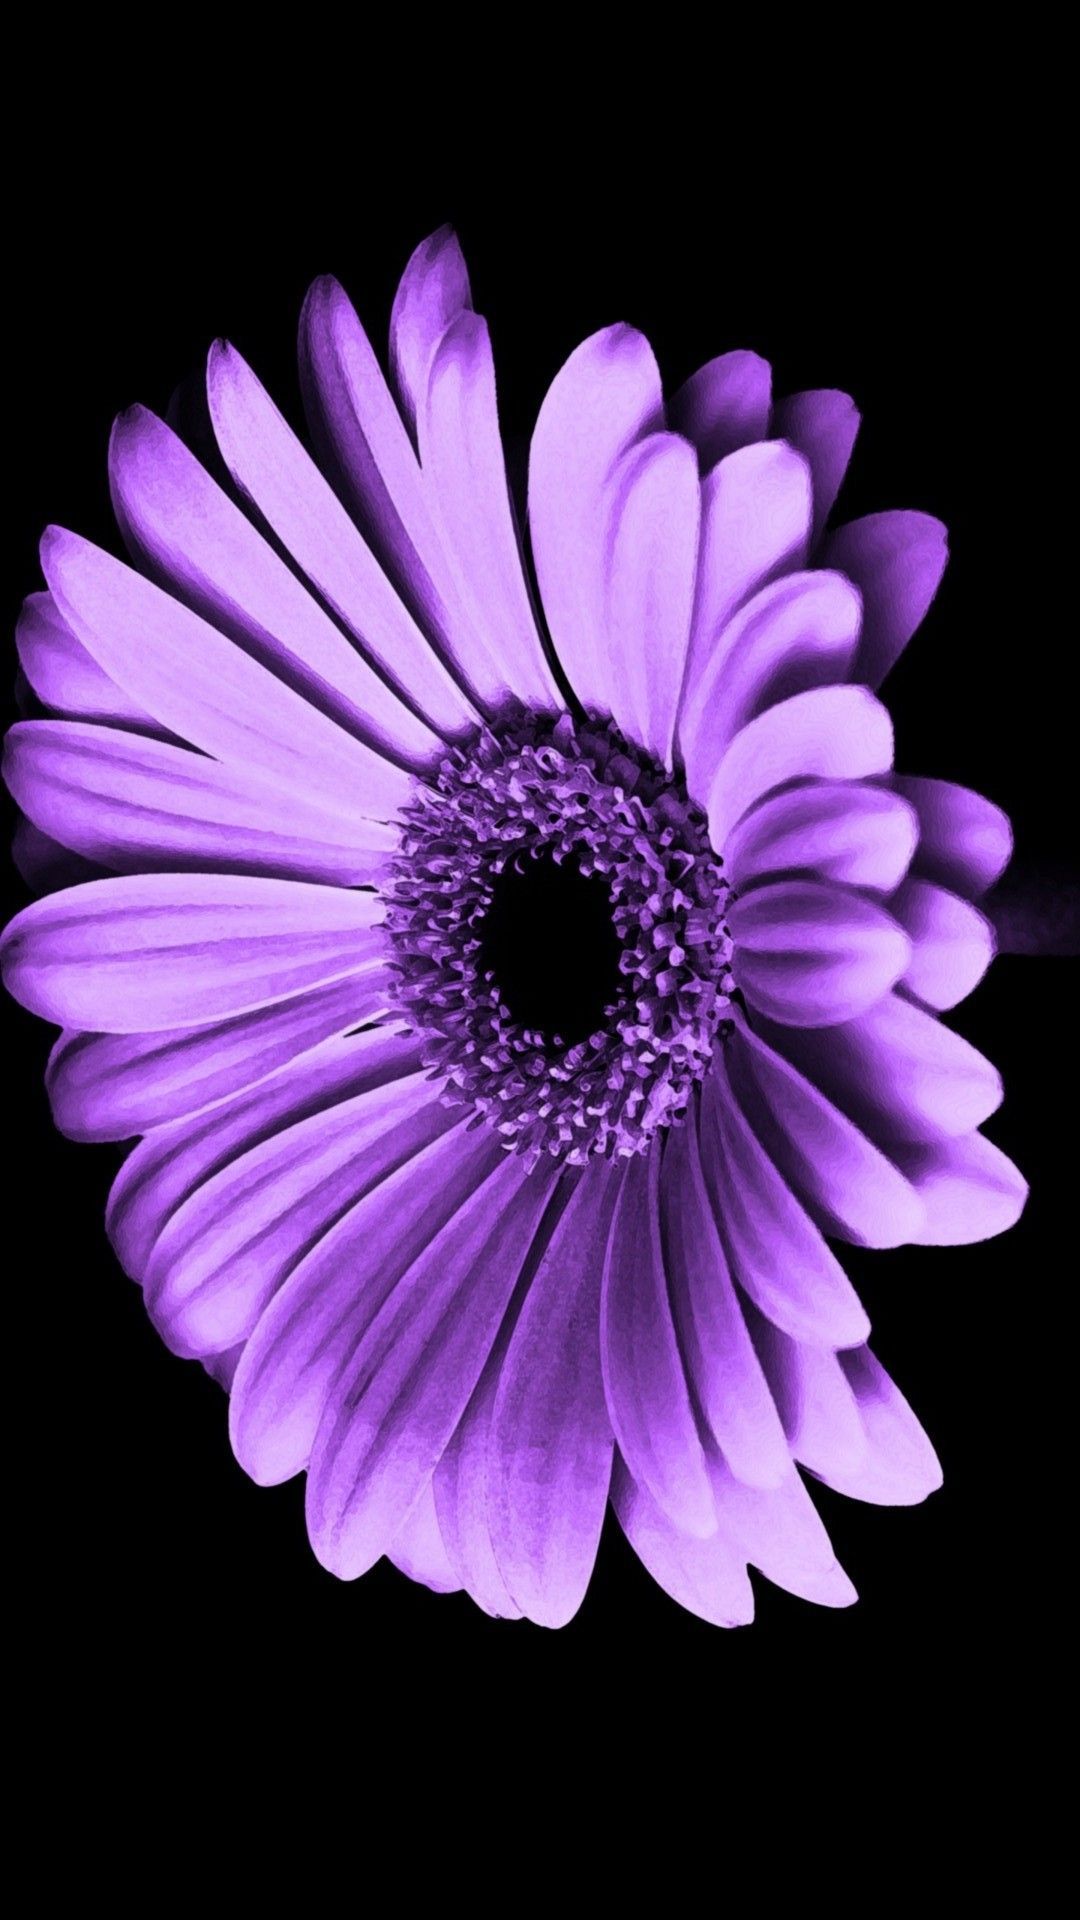 Purple Flowers iPhone Wallpaper HD. Best HD Wallpaper. Purple flowers wallpaper, Flower iphone wallpaper, iPhone wallpaper purple flower